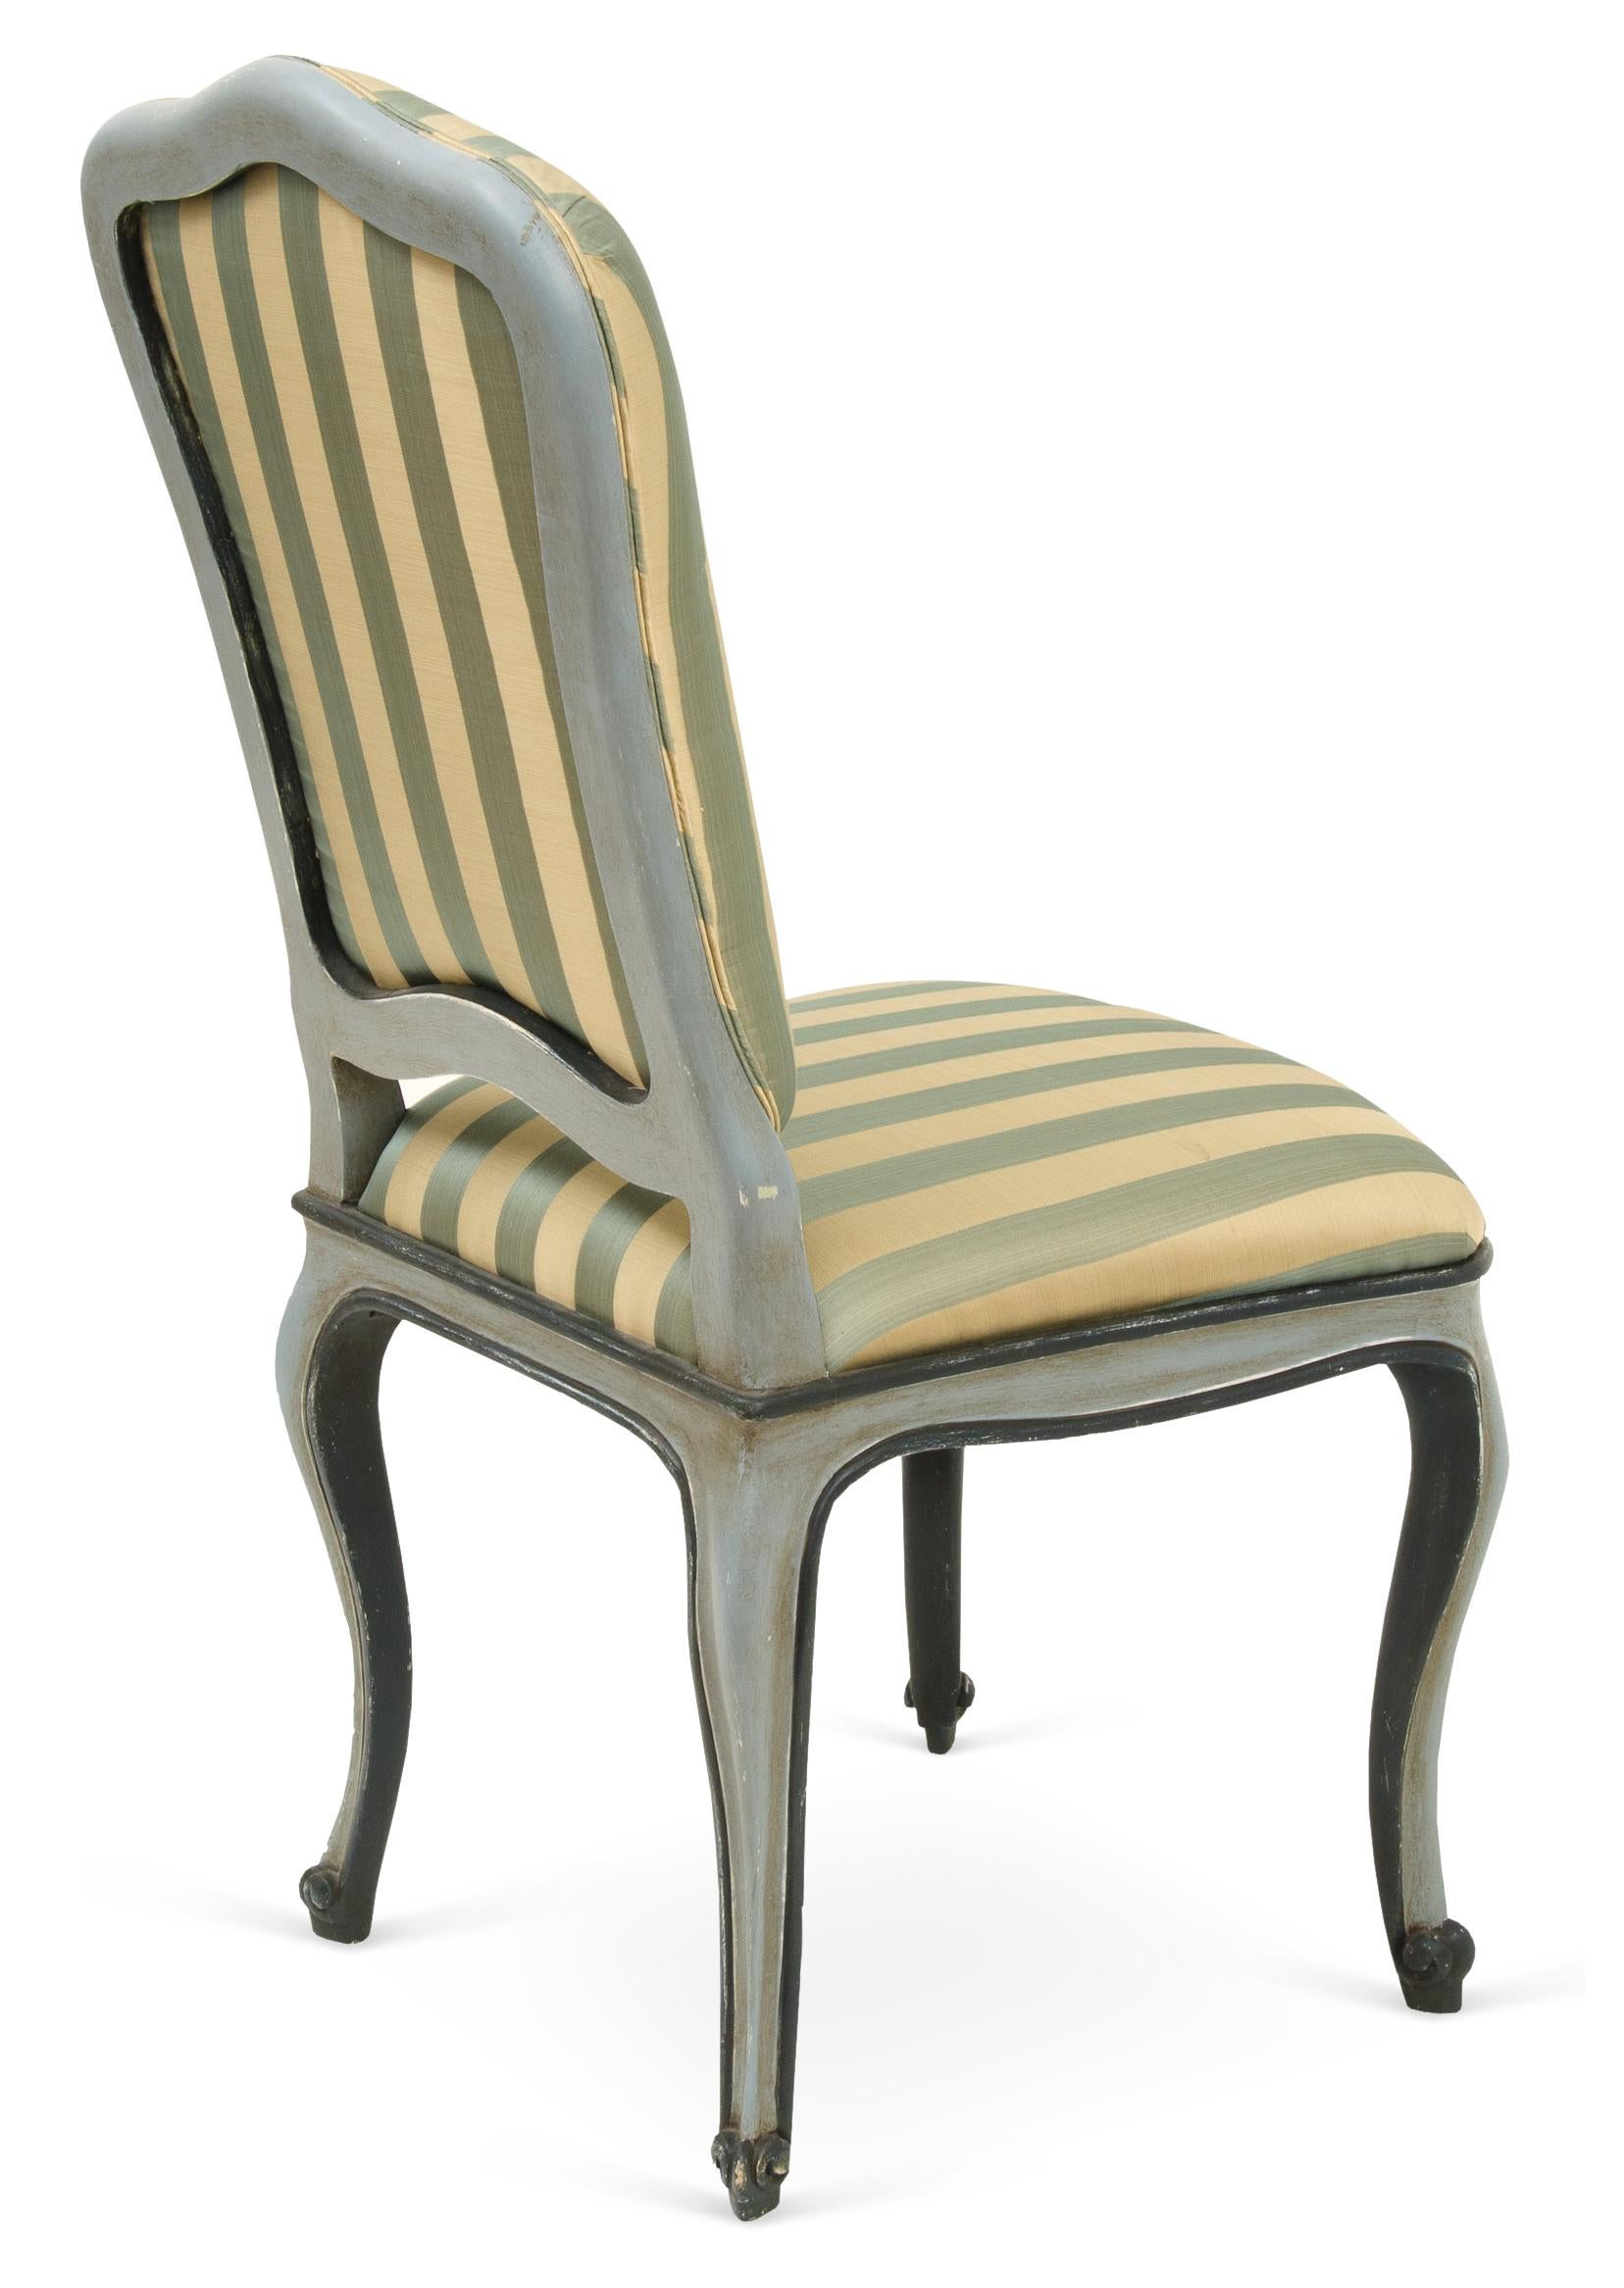 Diese Reproduktion eines antiken venezianischen Stuhls ist ein handgefertigtes Modell mit traditionellen Tischlerarbeiten, Antiklack und Borghese-Vergoldung auf den handgeschnitzten Kabriole-Beinen. Sondergrößen und -ausführungen sind